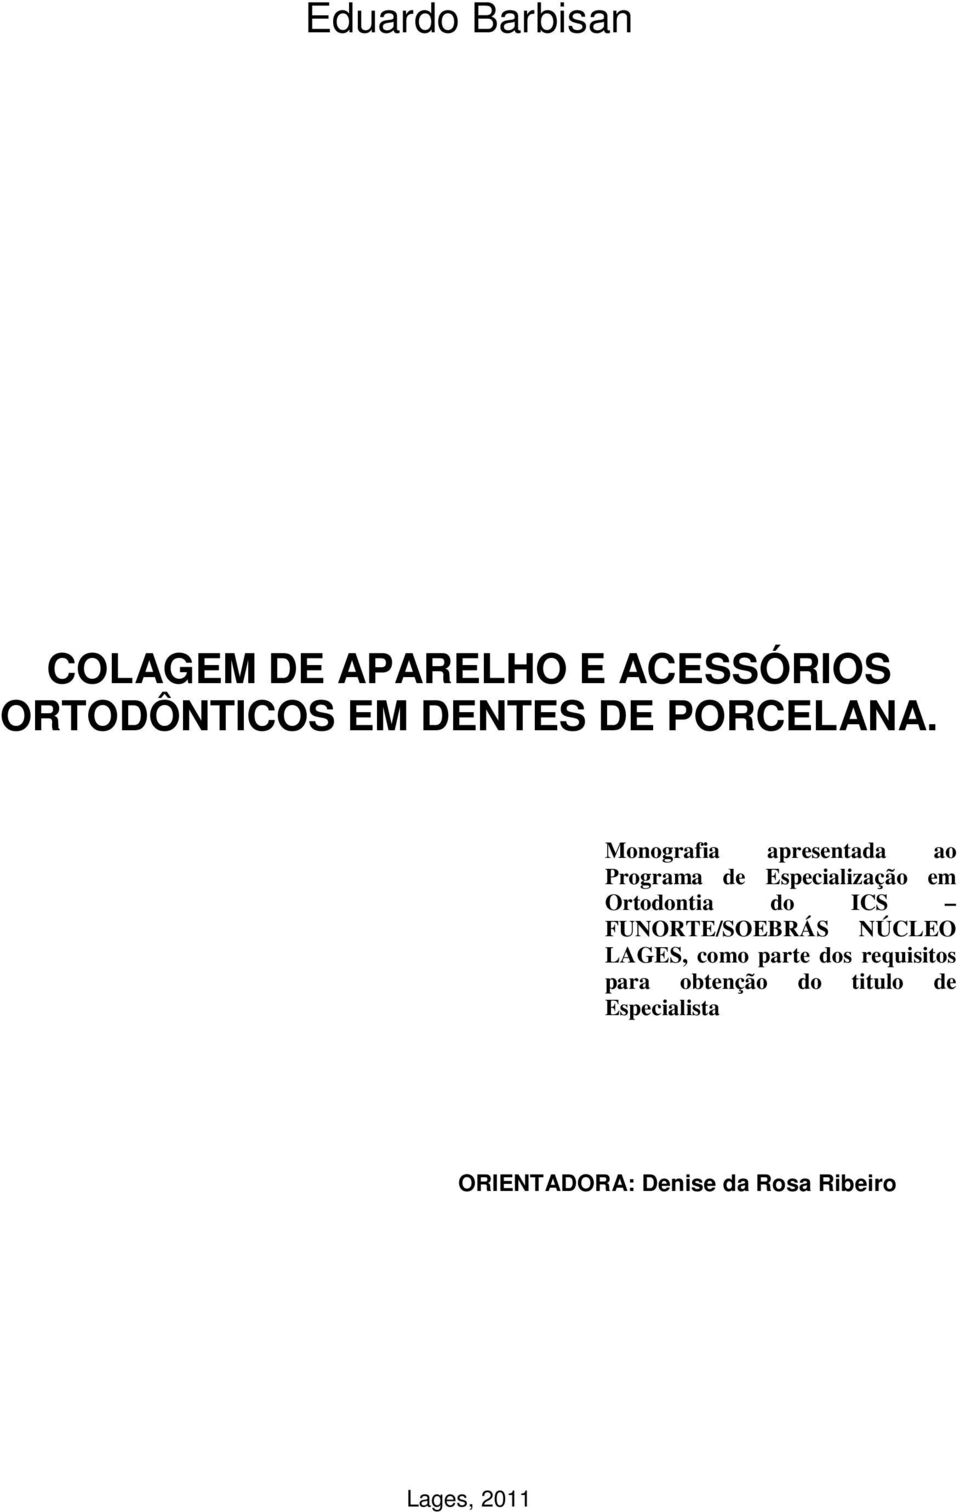 Monografia apresentada ao Programa de Especialização em Ortodontia do ICS